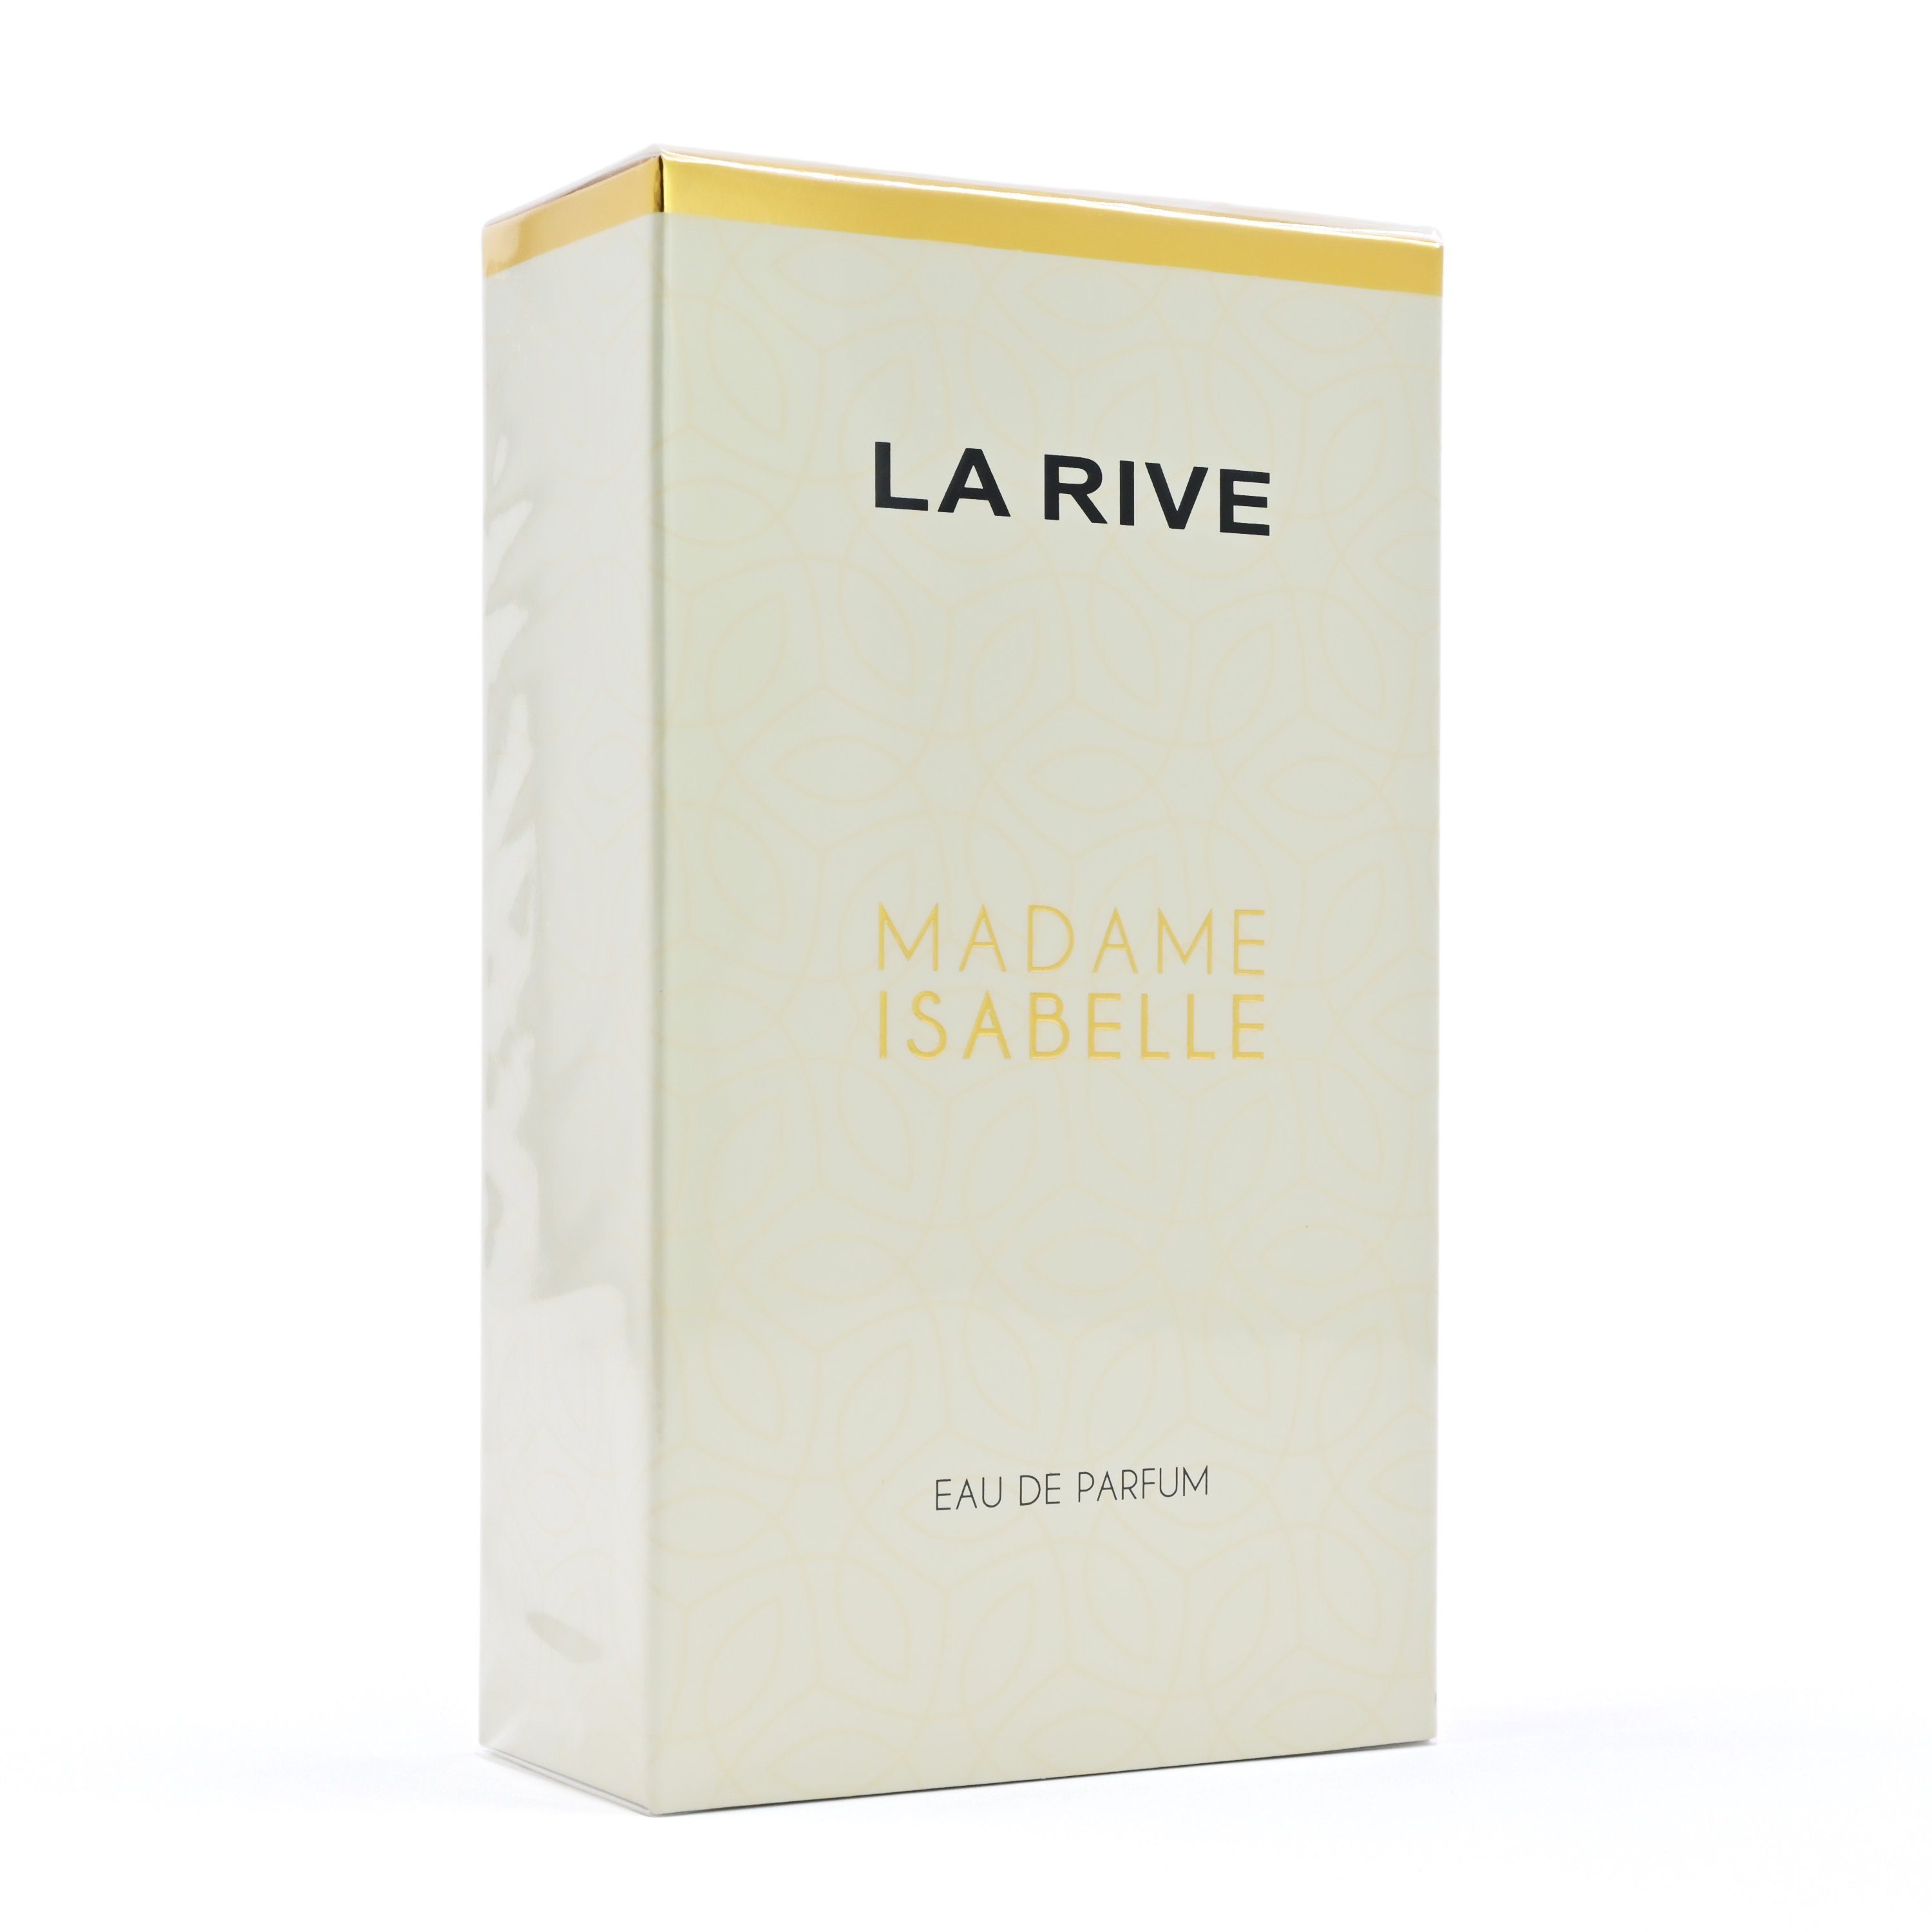 - LA Rive Parfum de La Eau 90 Isabelle Madame Eau - de Parfum ml RIVE